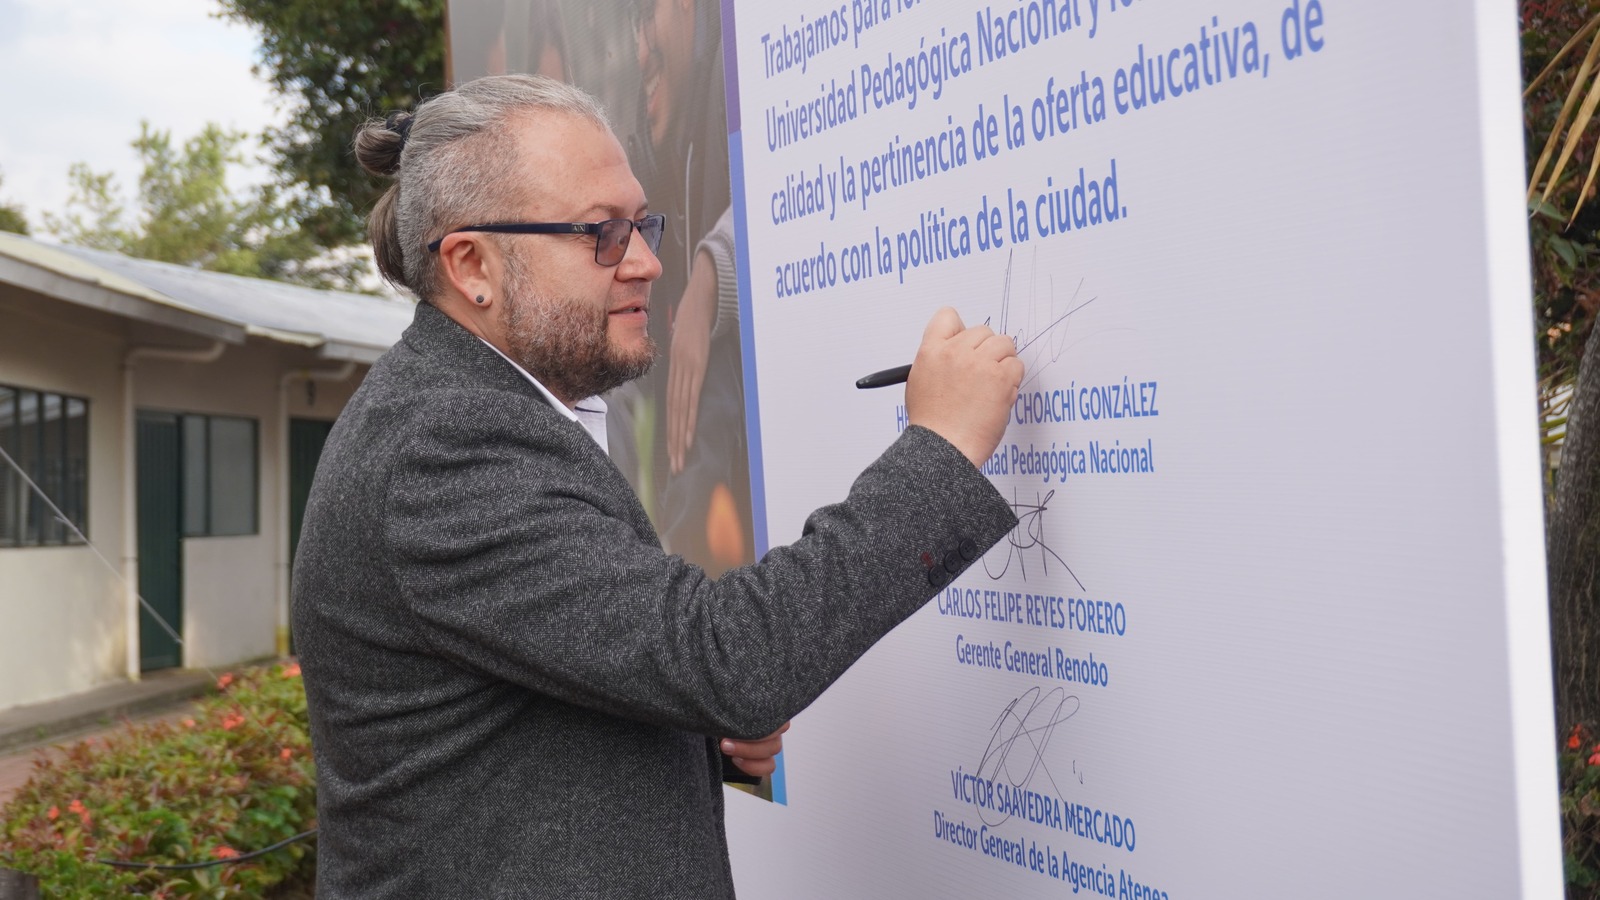 La Universidad Pedagógica Nacional, la Agencia Atenea y Renobo firmaron un convenio para fortalecer la infraestructura y la oferta educativa de la UPN